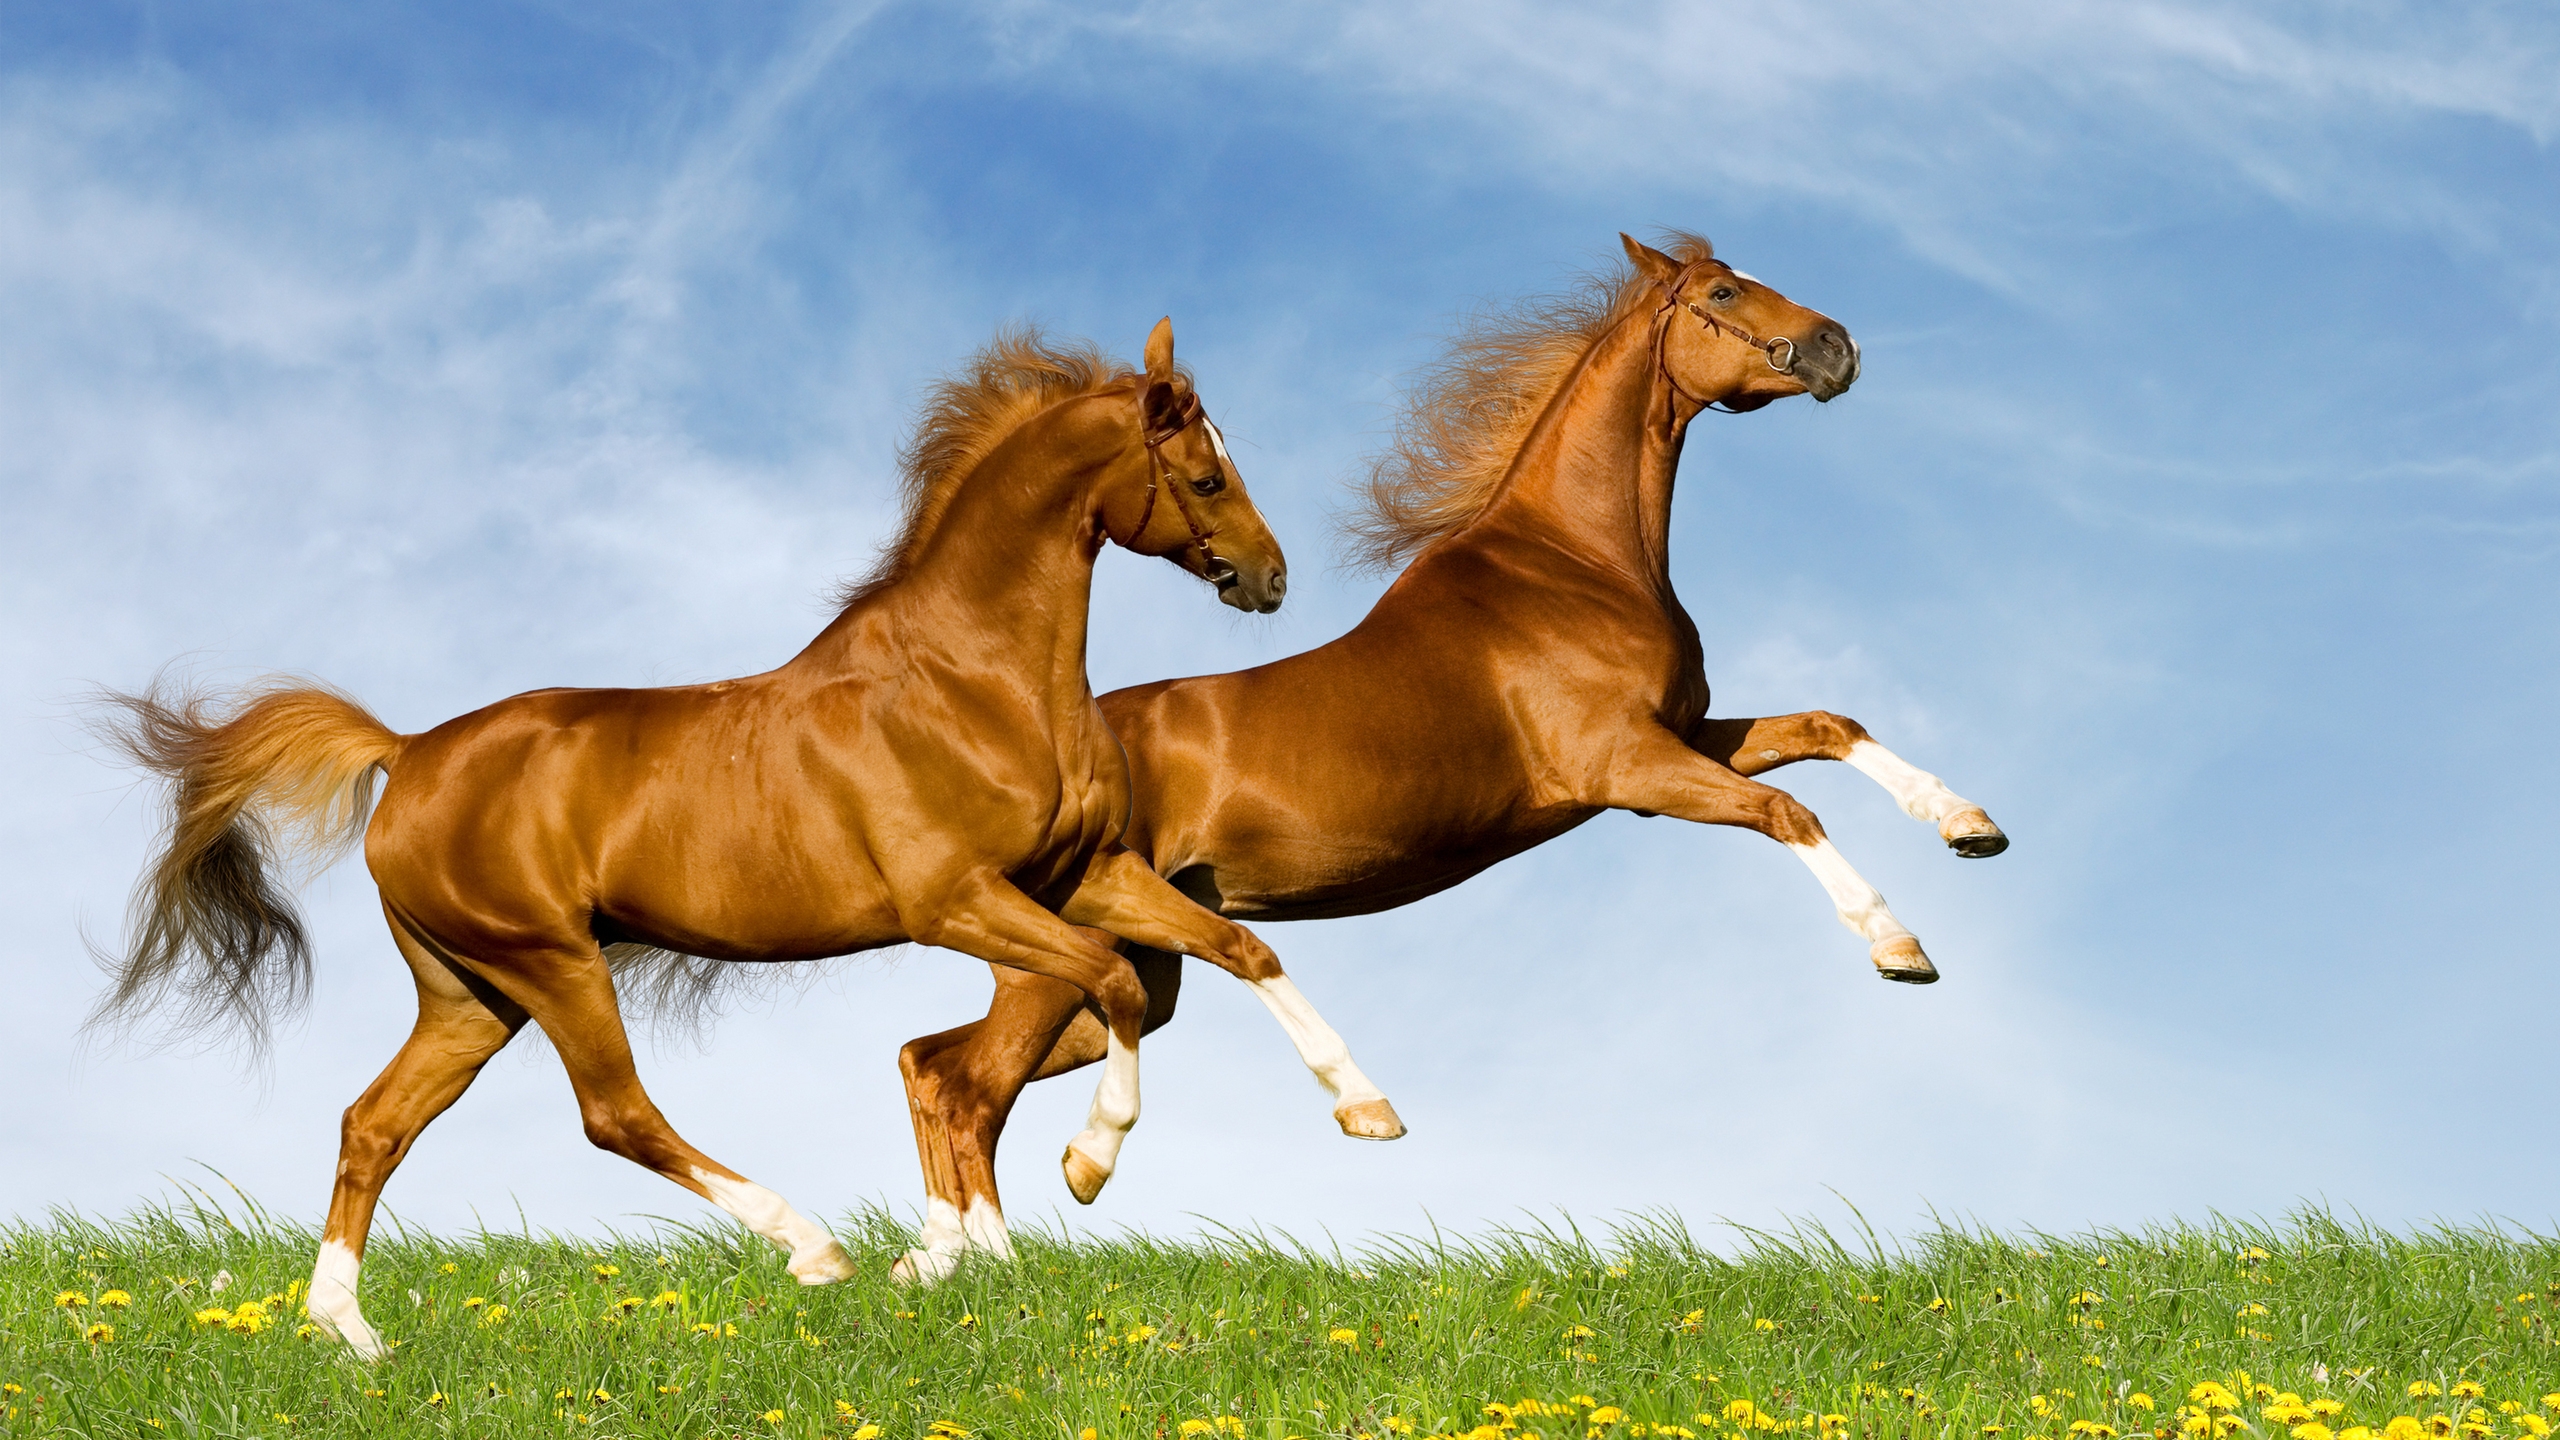 Horses Running for 2560x1440 HDTV resolution